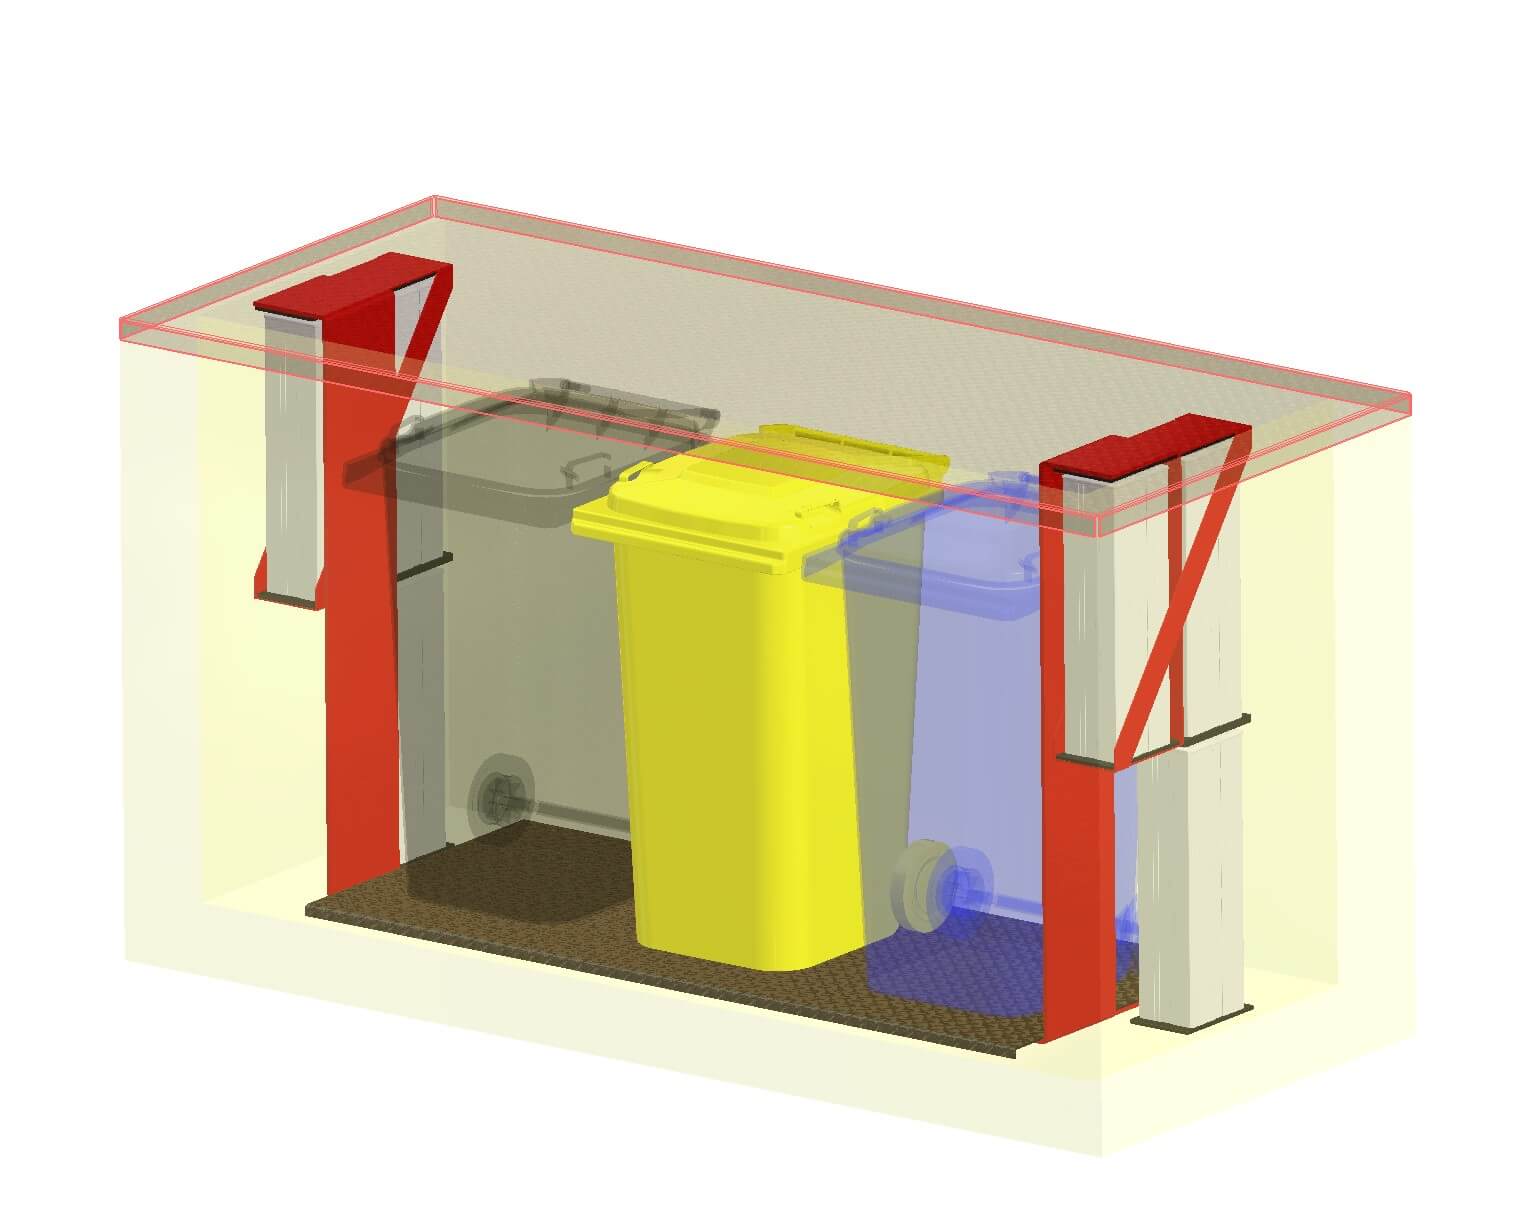 Mülltonnen Lift System selbst bauen illustration 3 Mülltonnen geschlossen.jpg